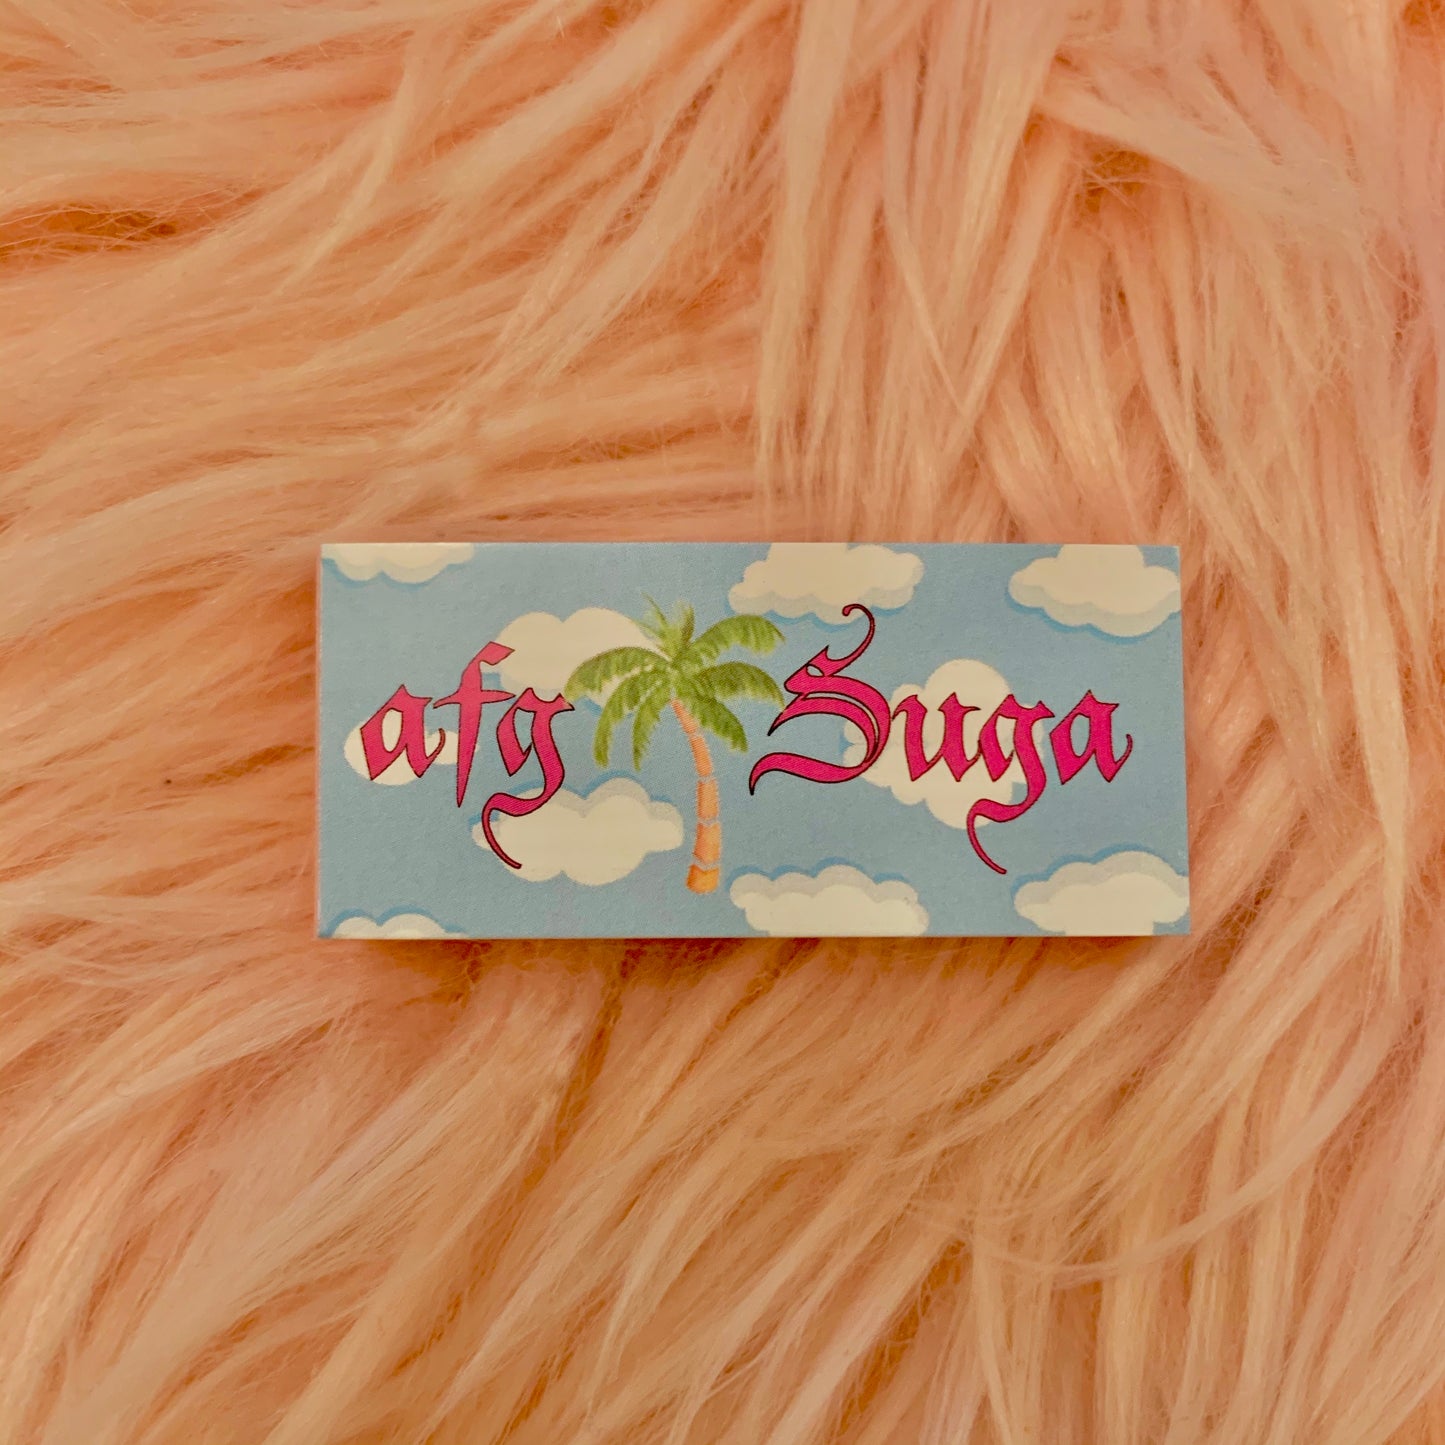 001: Afg Suga OG Pink Tips